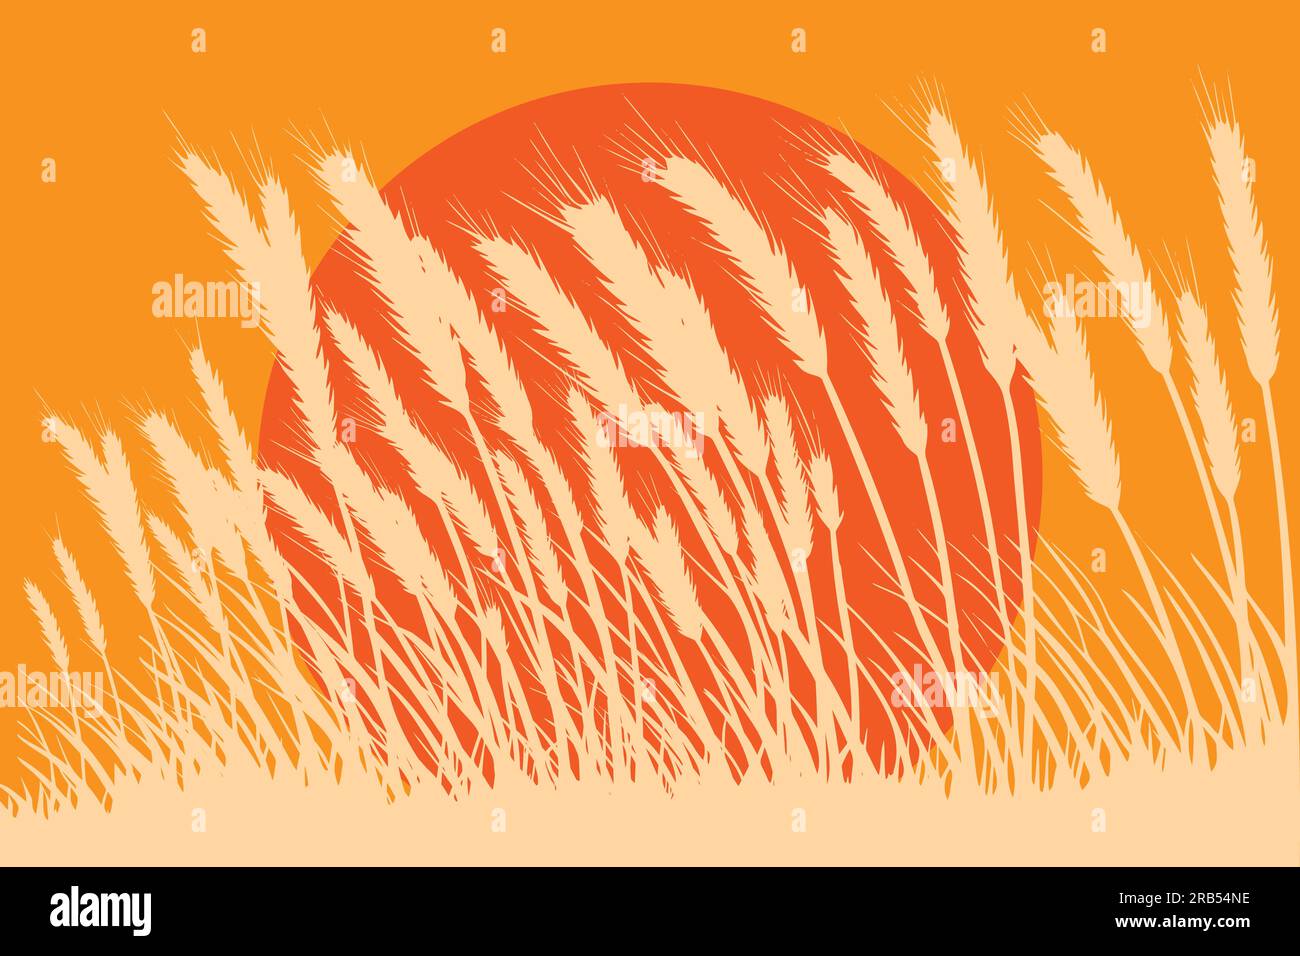 Wheat field on summer scene. vector illustration Stock Vector